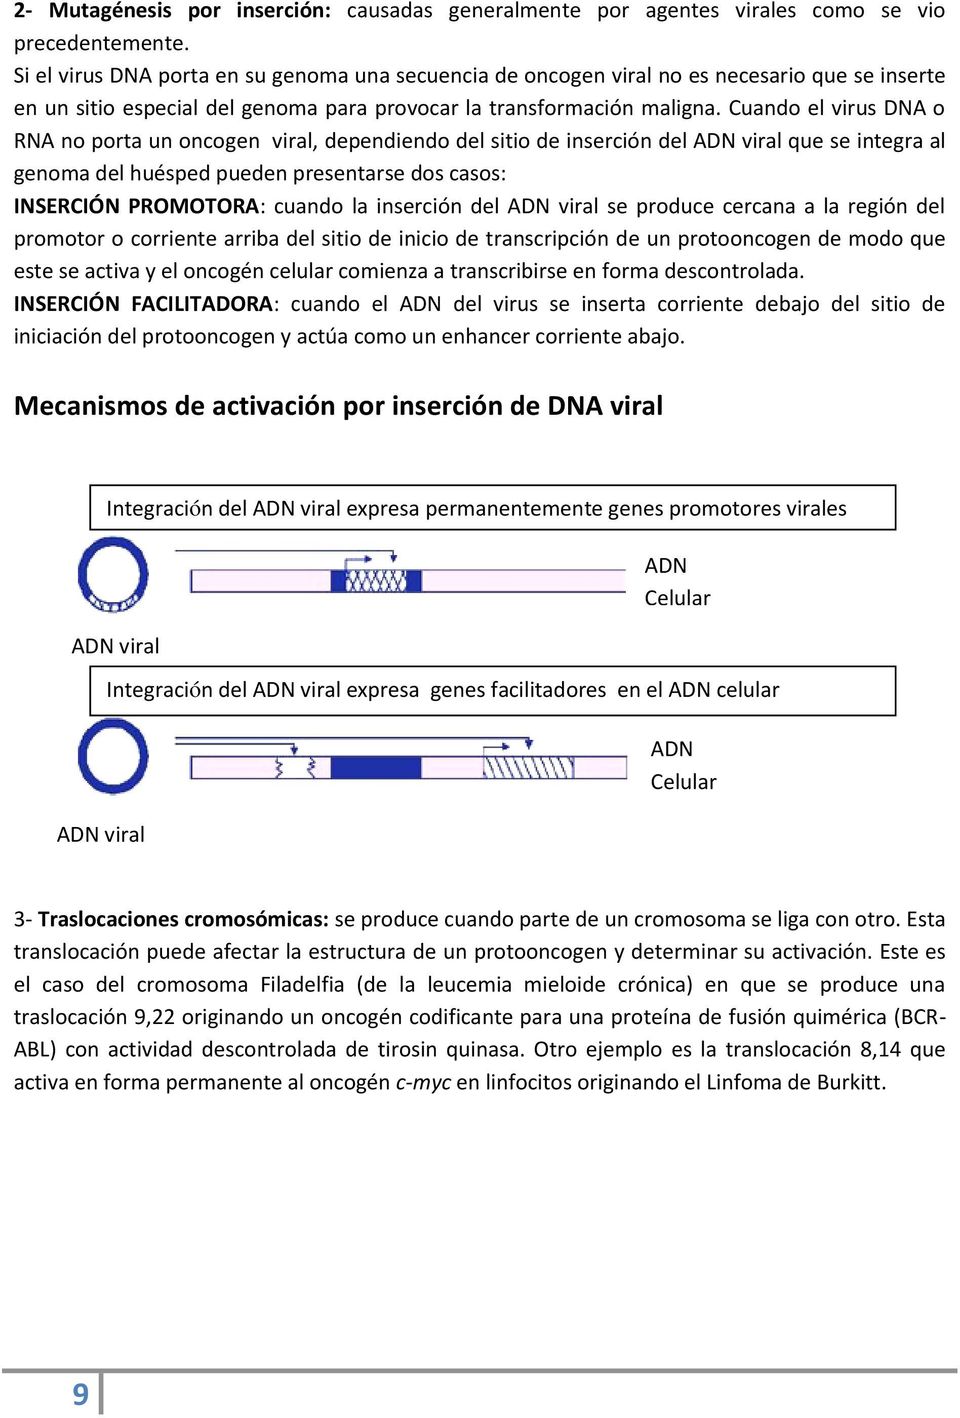 Cuando el virus DNA o RNA no porta un oncogen viral, dependiendo del sitio de inserción del ADN viral que se integra al genoma del huésped pueden presentarse dos casos: INSERCIÓN PROMOTORA: cuando la